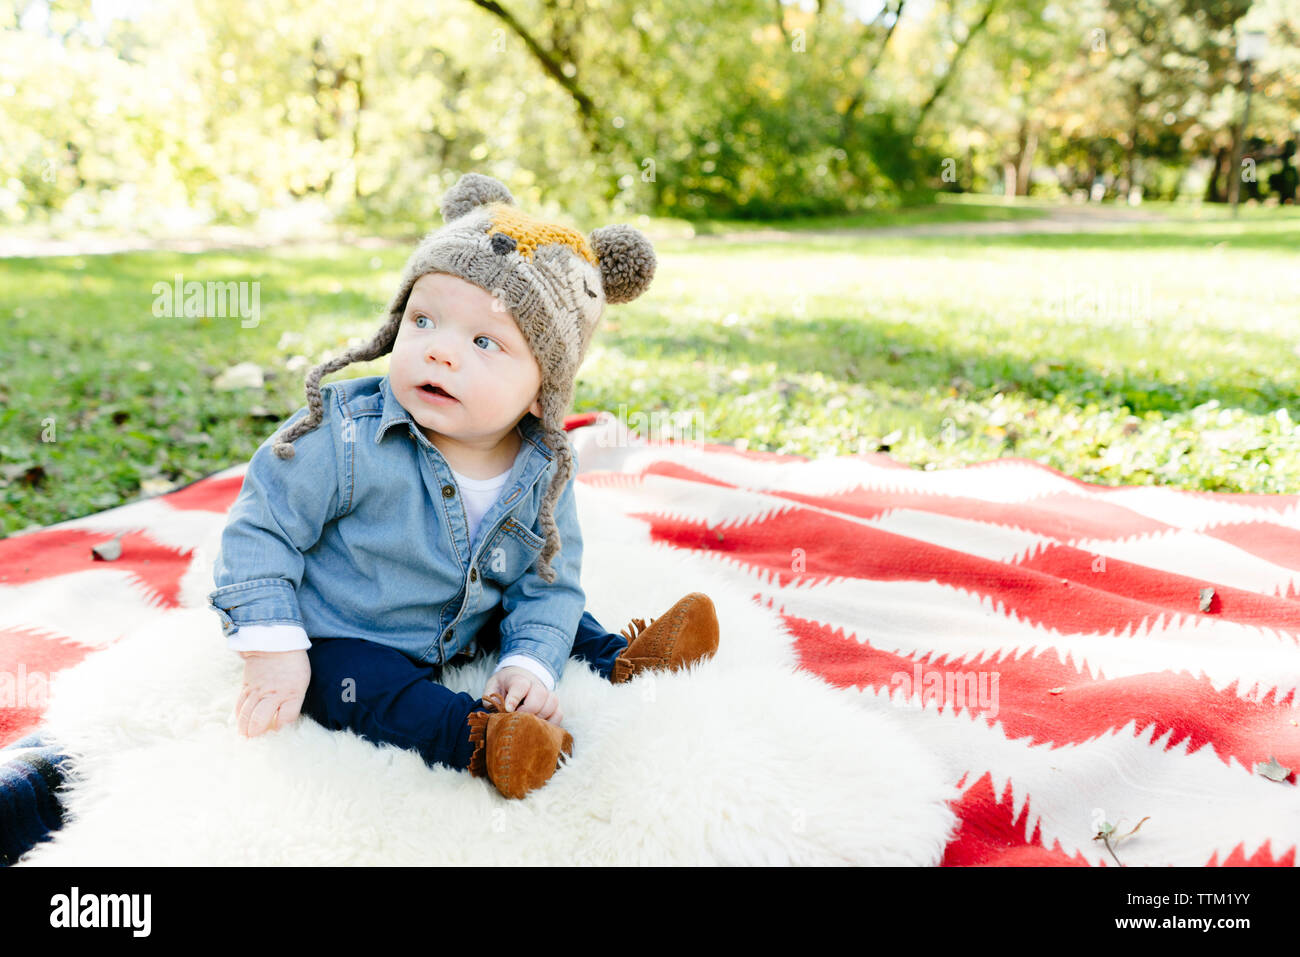 Ein baby boy schaut weg, während auf einer Decke Sitzen Stockfotografie -  Alamy